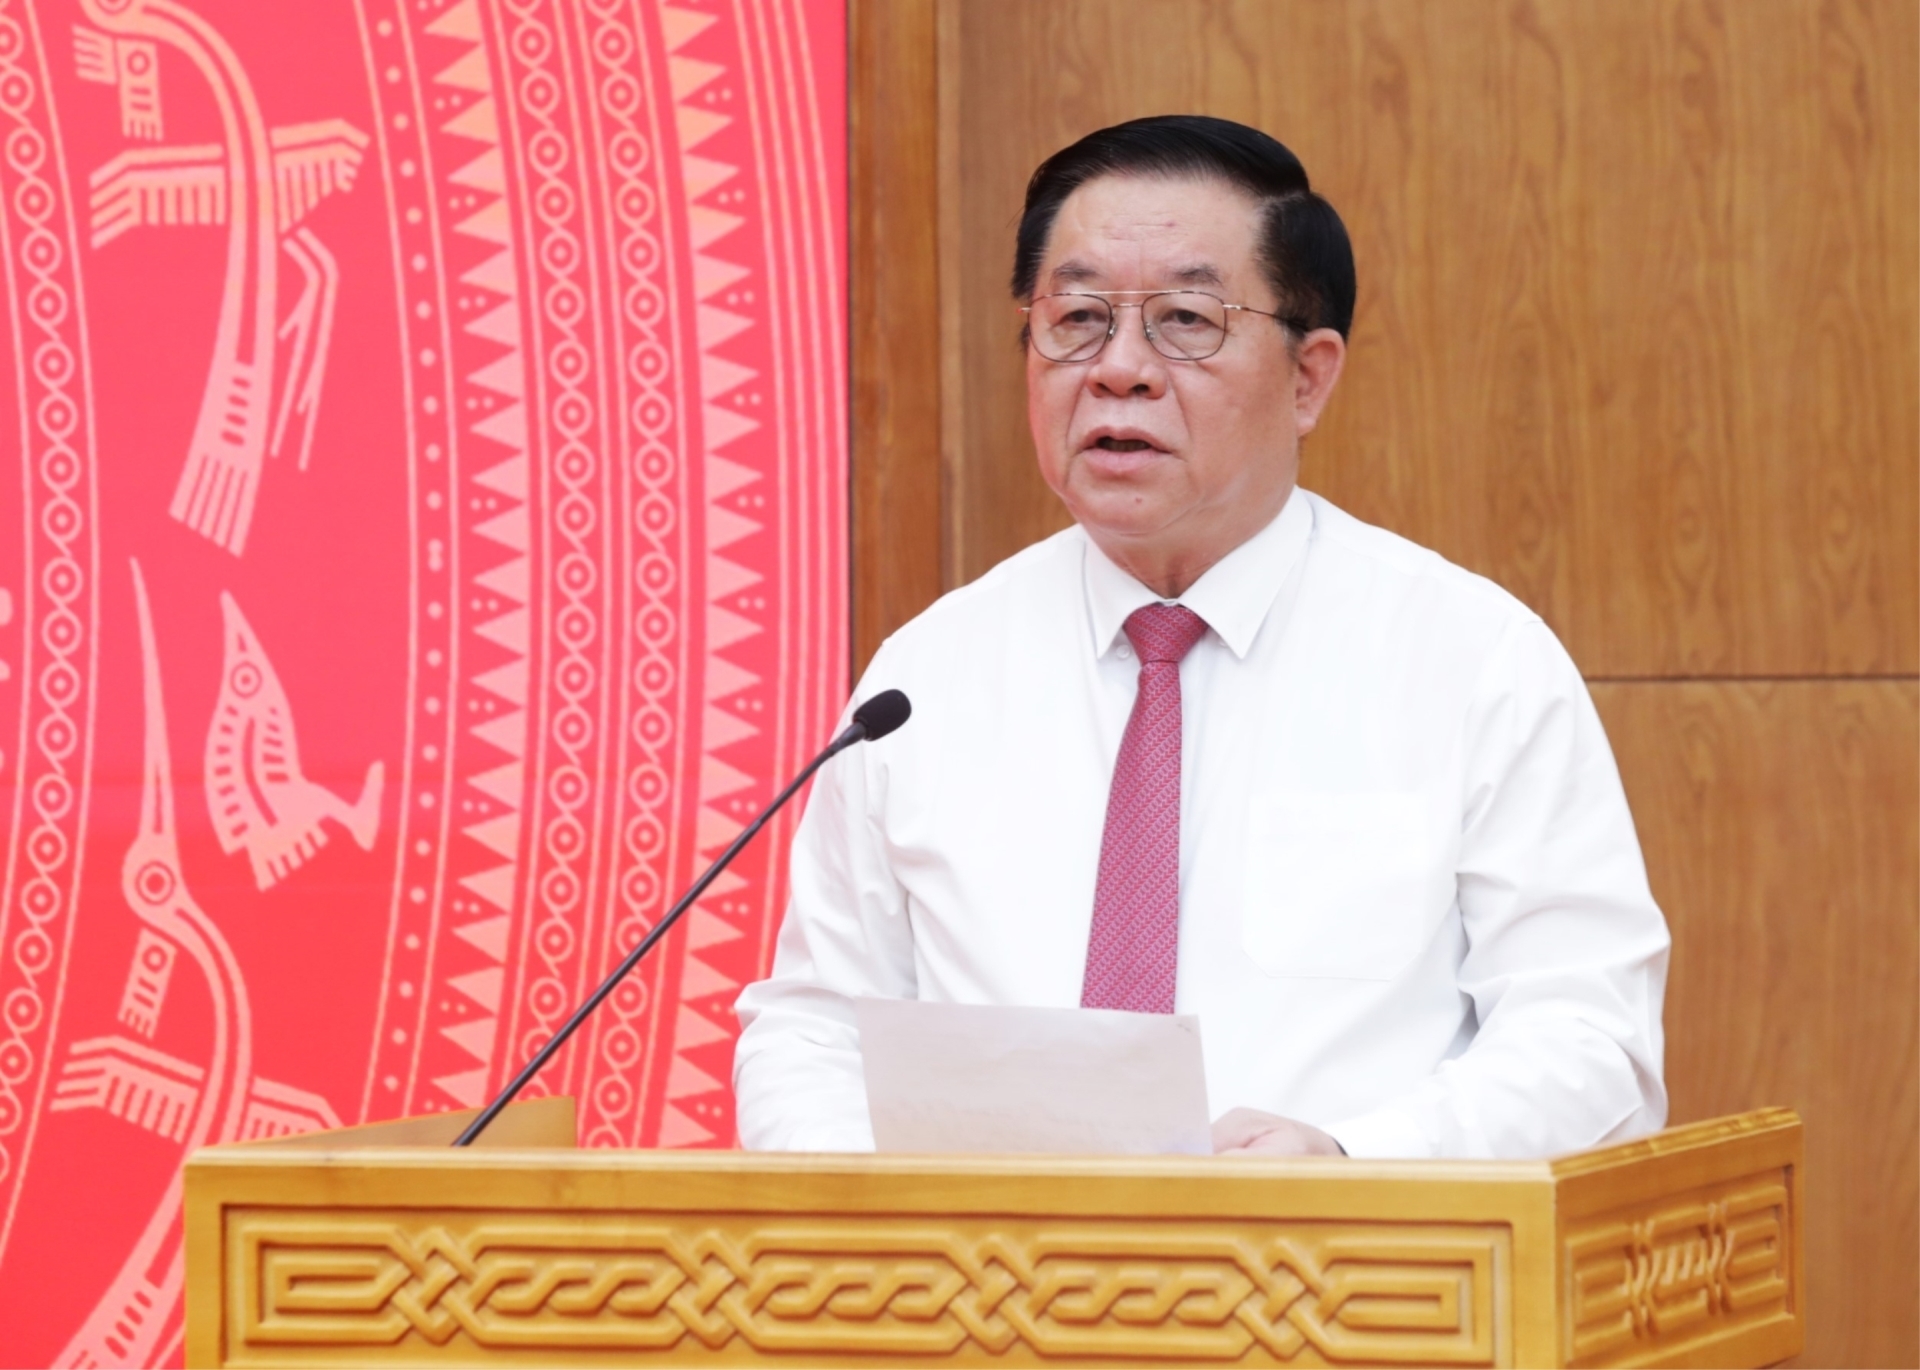 Đồng chí Nguyễn Trọng Nghĩa, Ủy viên Bộ Chính trị, Bí thư Trung ương Đảng, Trưởng Ban Tuyên giáo Trung ương phát biểu tại Hội nghị.